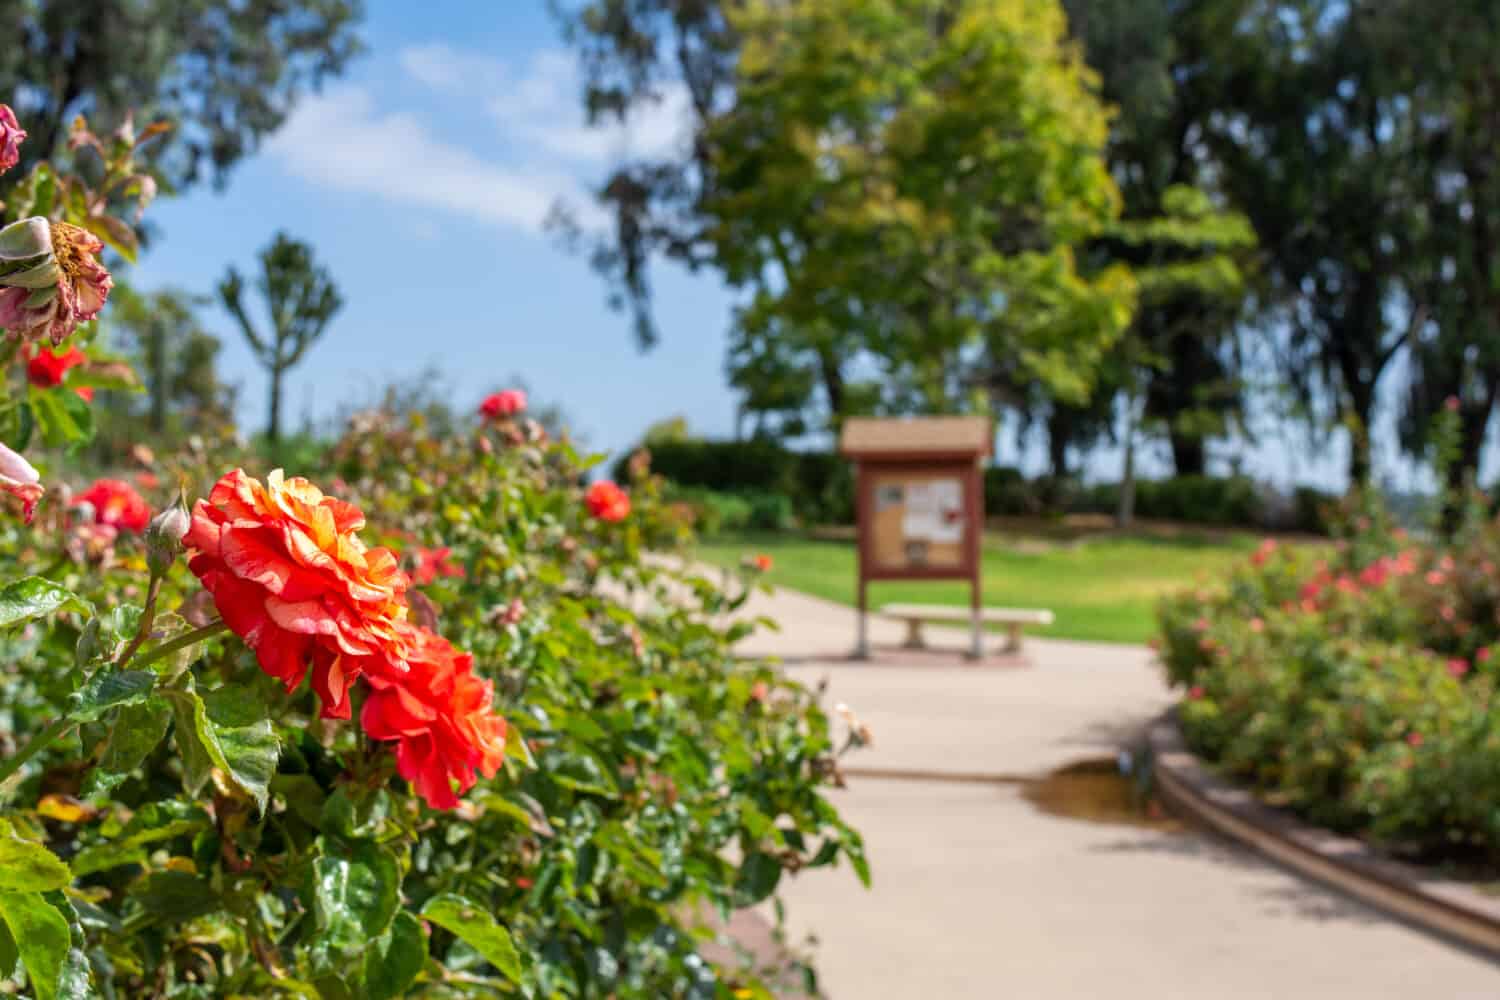 Balboa Park's Inez Grant Parker Memorial Rose Garden